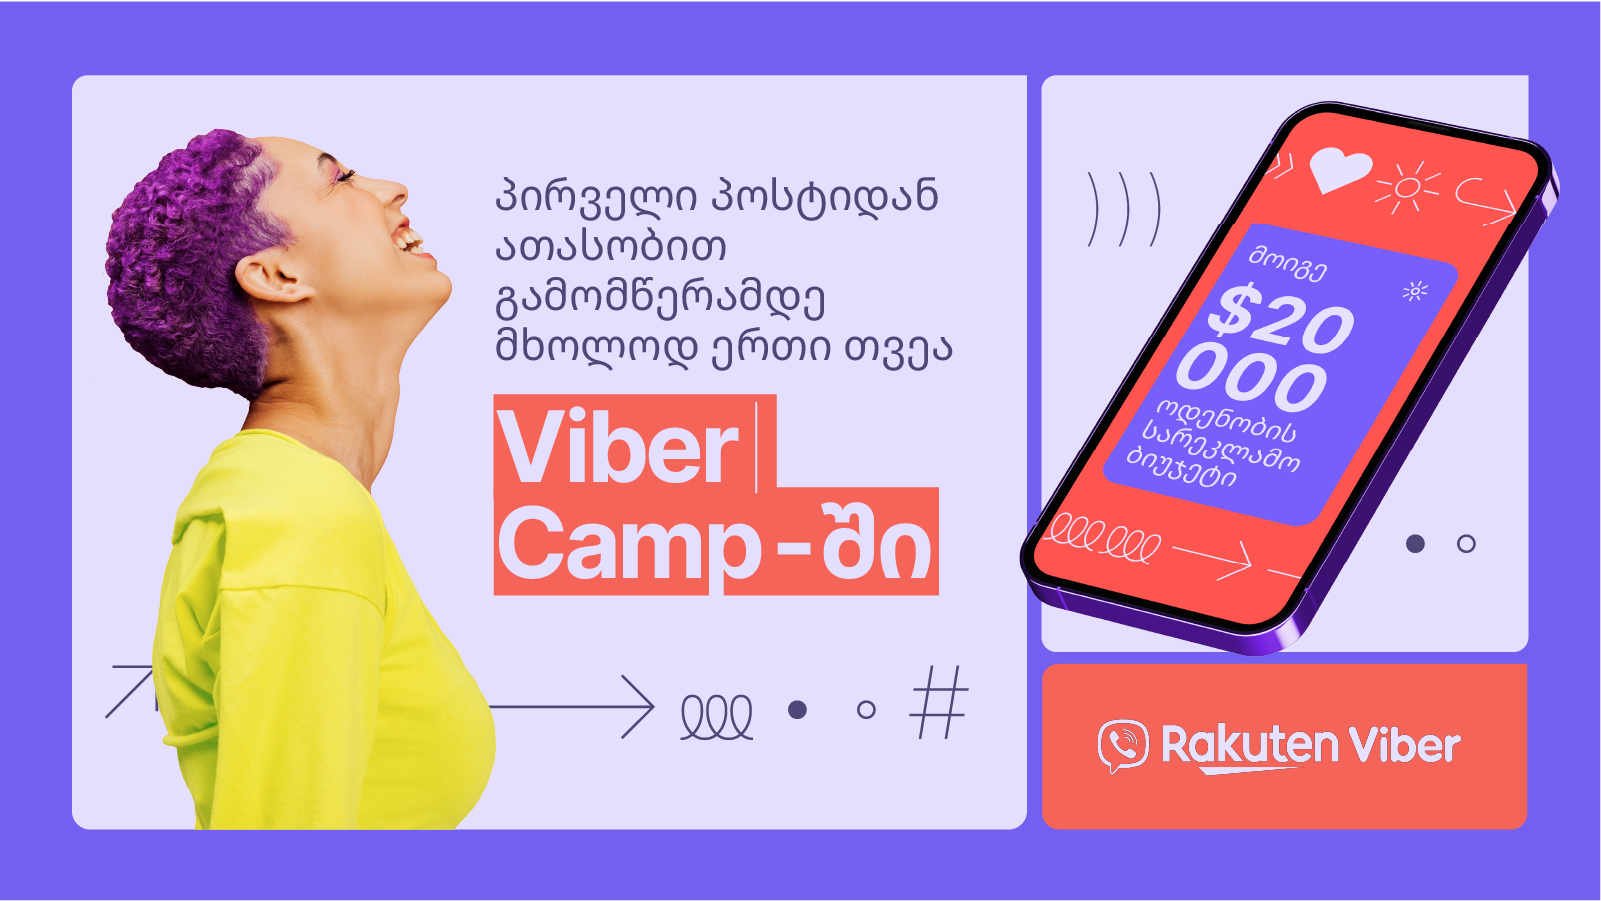 საინტერესო დავალებები, ახალი გამოცდილება და გრანდიოზული პრიზები: Viber Camp დაიწყო